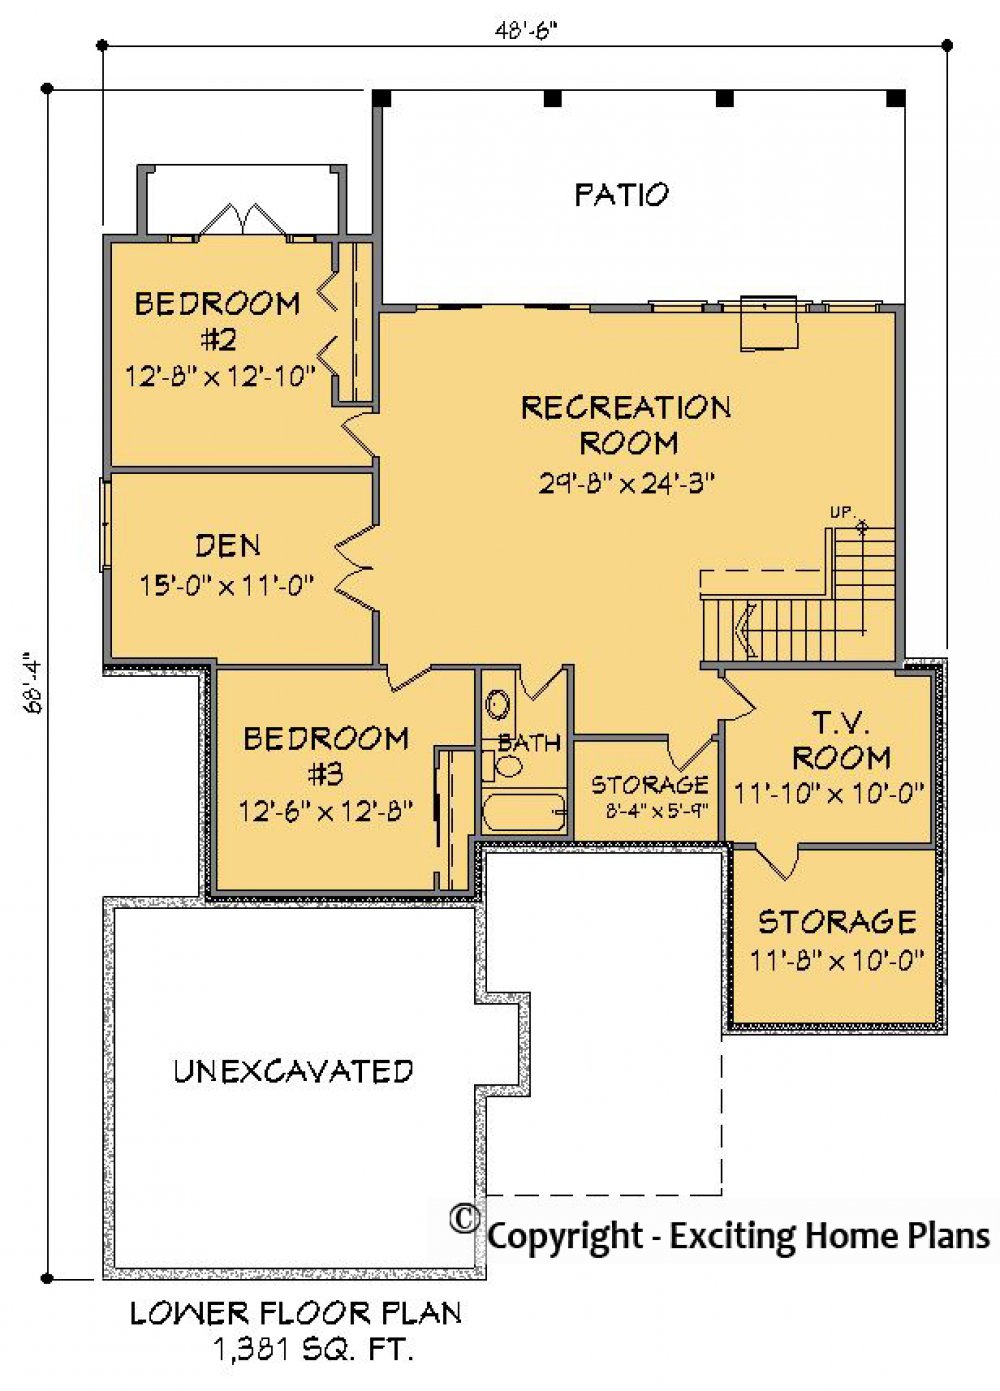 House Plan E1409-10 Lower Floor Plan